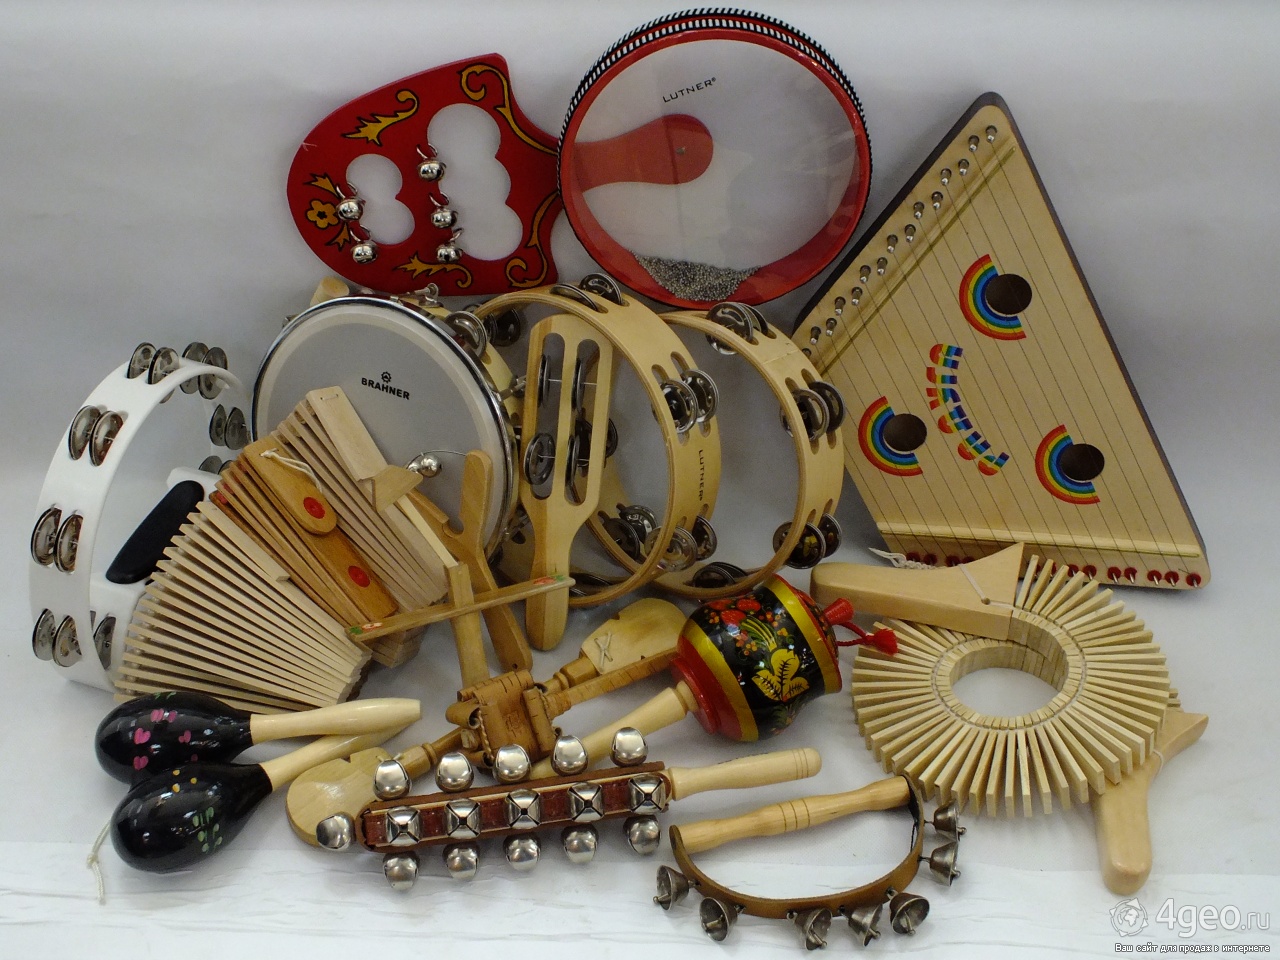 Музыкальные инструменты рф. Народные инструменты. Русские народные музыкальные инструменты. Н̾а̾р̾о̾д̾н̾ы̾е̾ и̾н̾с̾т̾р̾у̾м̾е̾н̾т̾. Шумовые музыкальные инструменты.